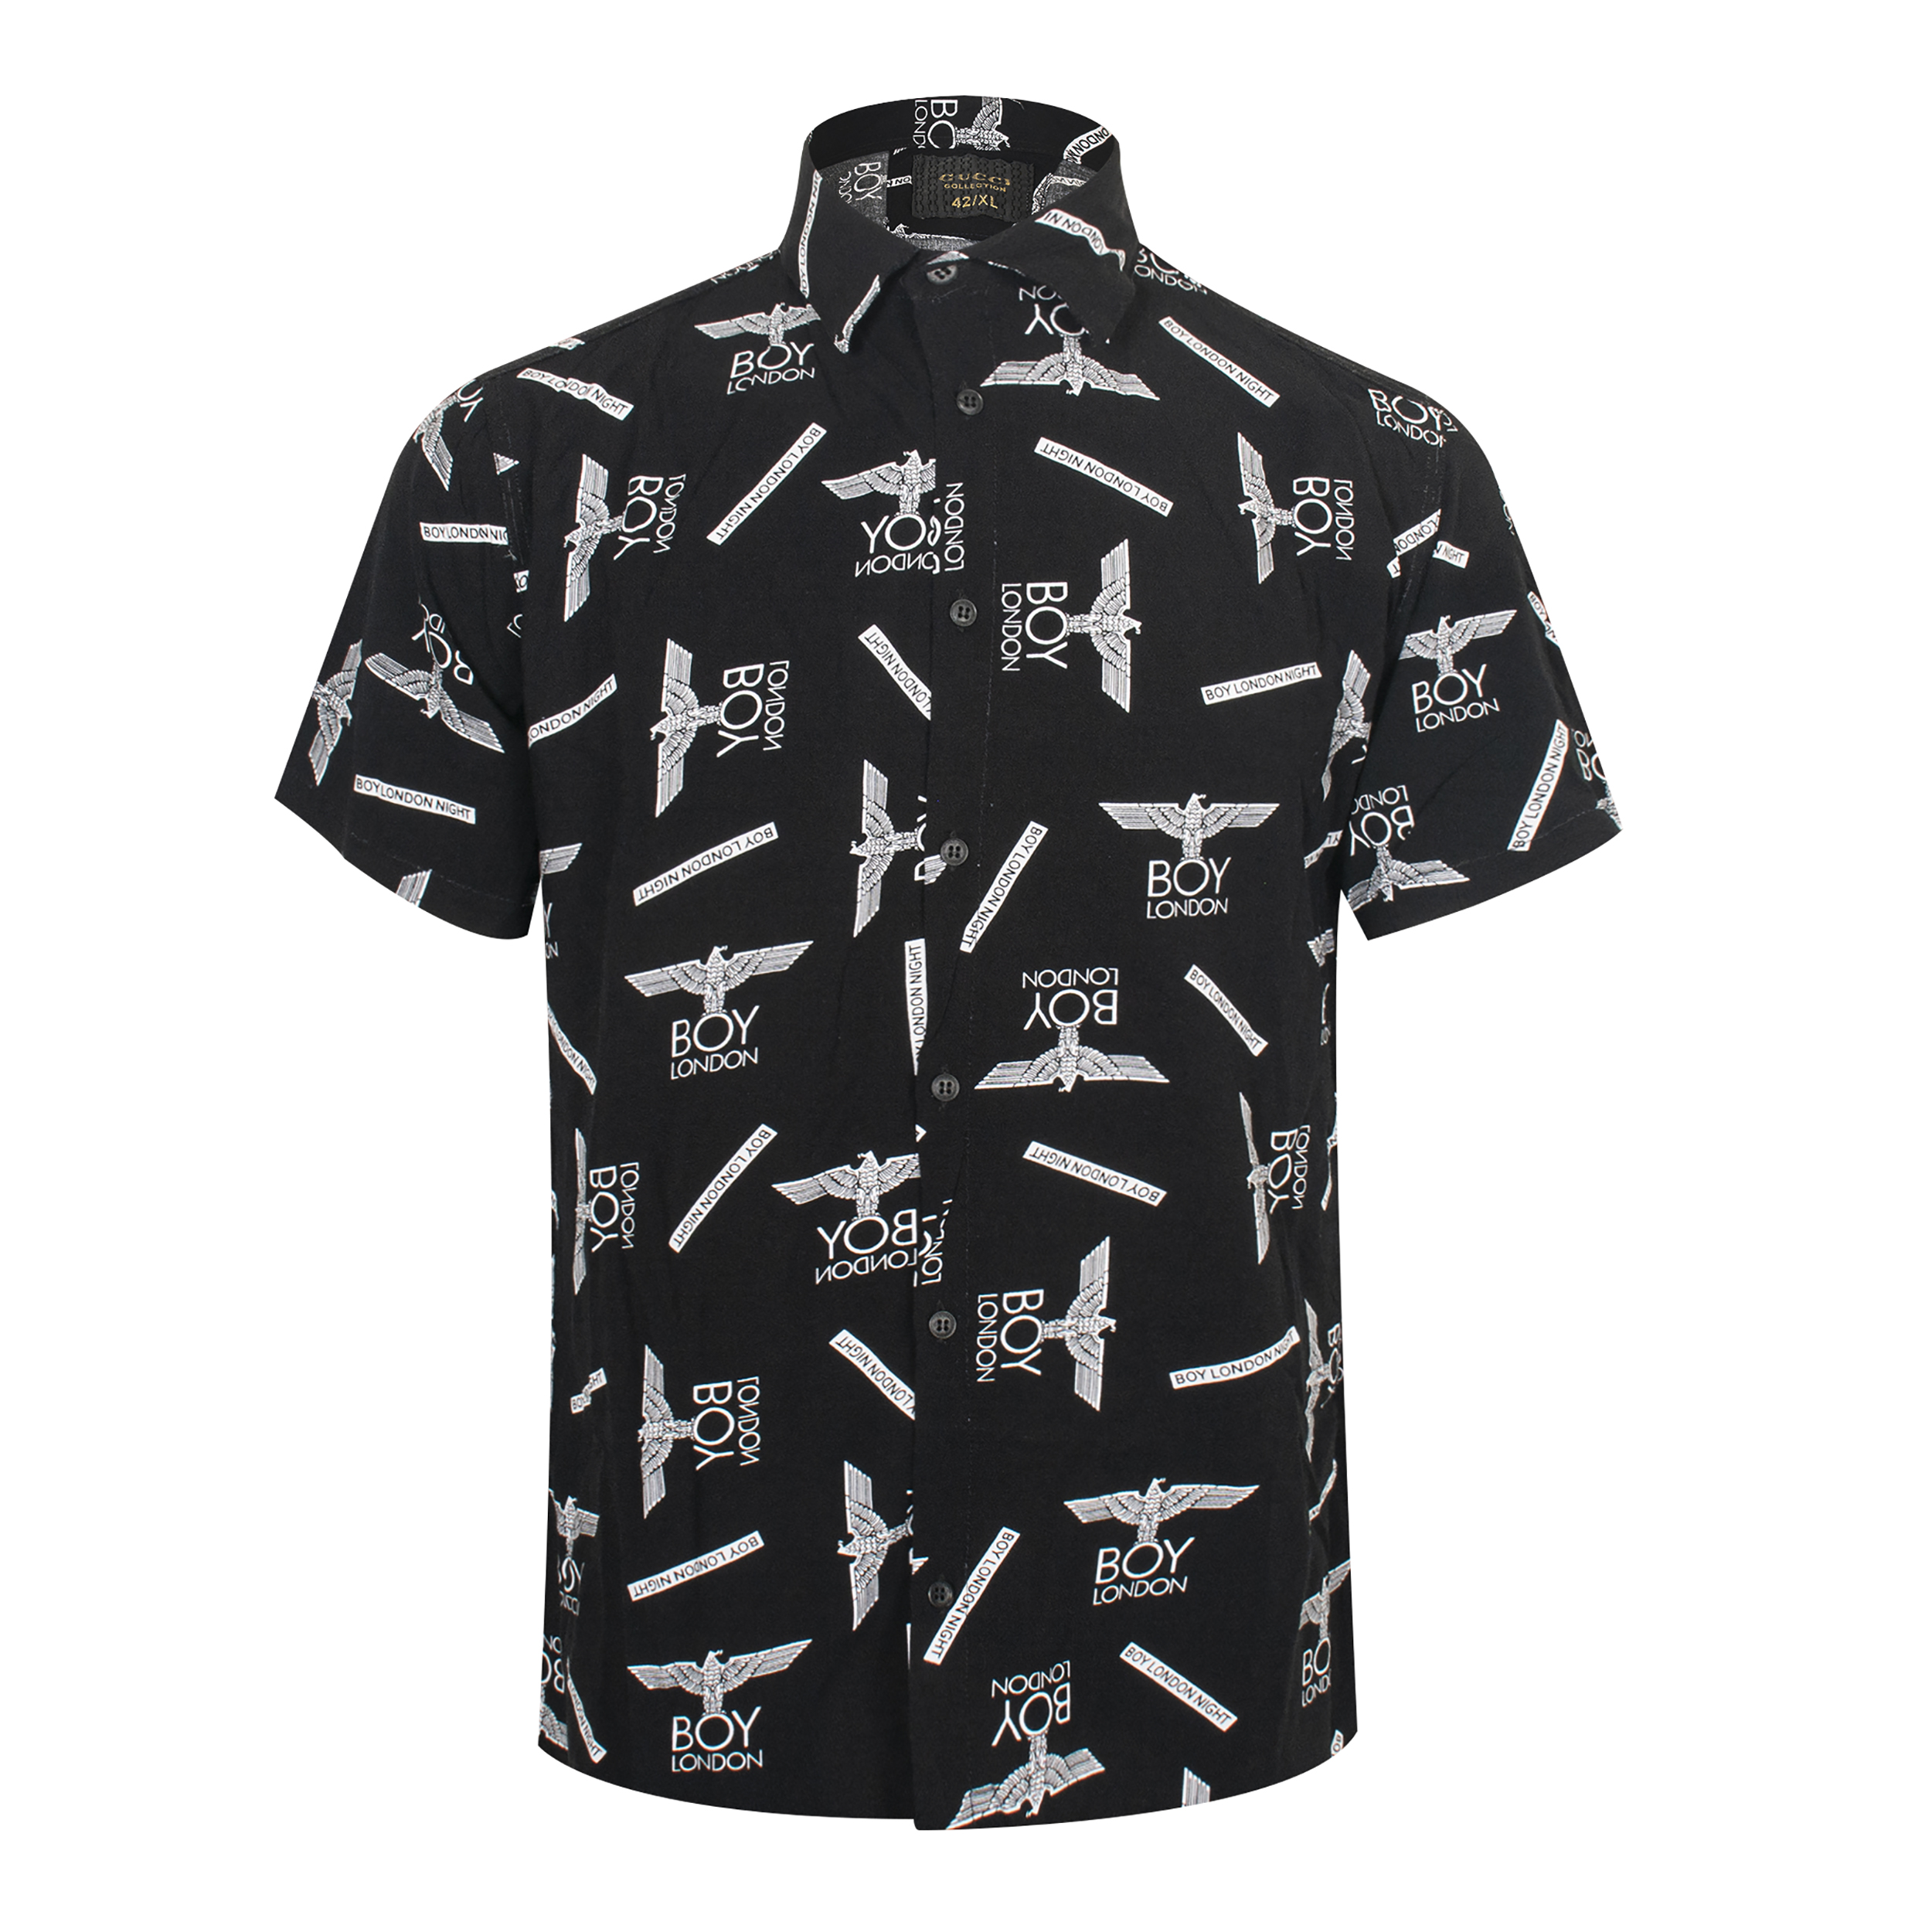 نکته خرید - قیمت روز پیراهن آستین کوتاه مردانه مدل هاوایی خرید